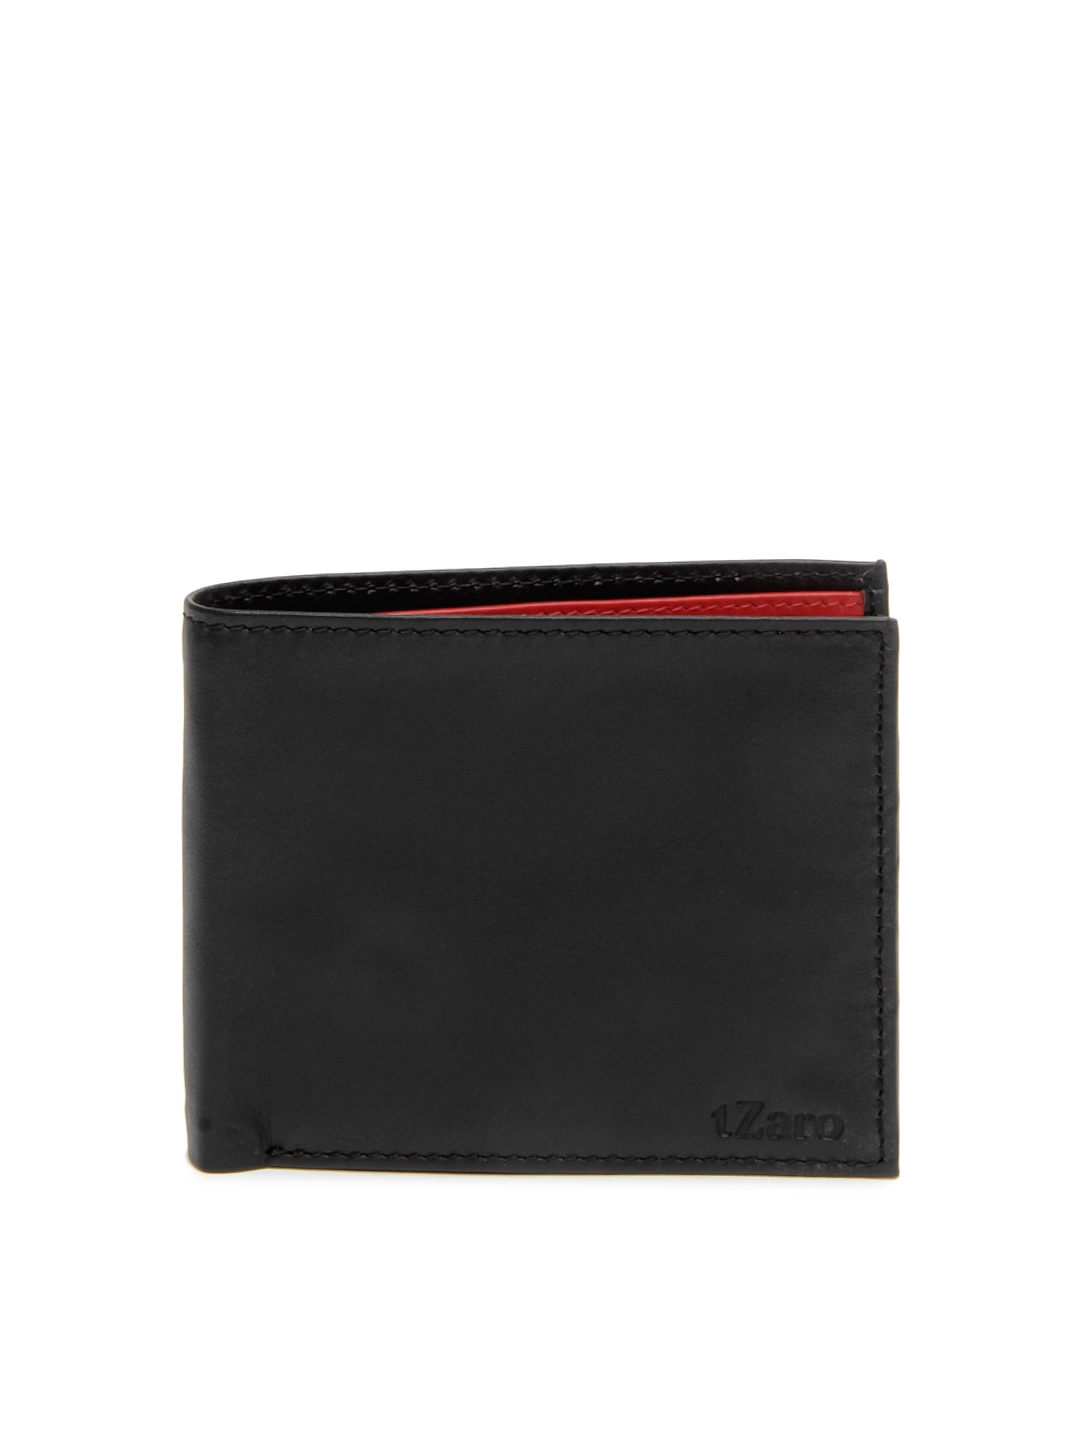 Buy TZaro Men Black Leather Wallet - Wallets for Men 400555 | Myntra